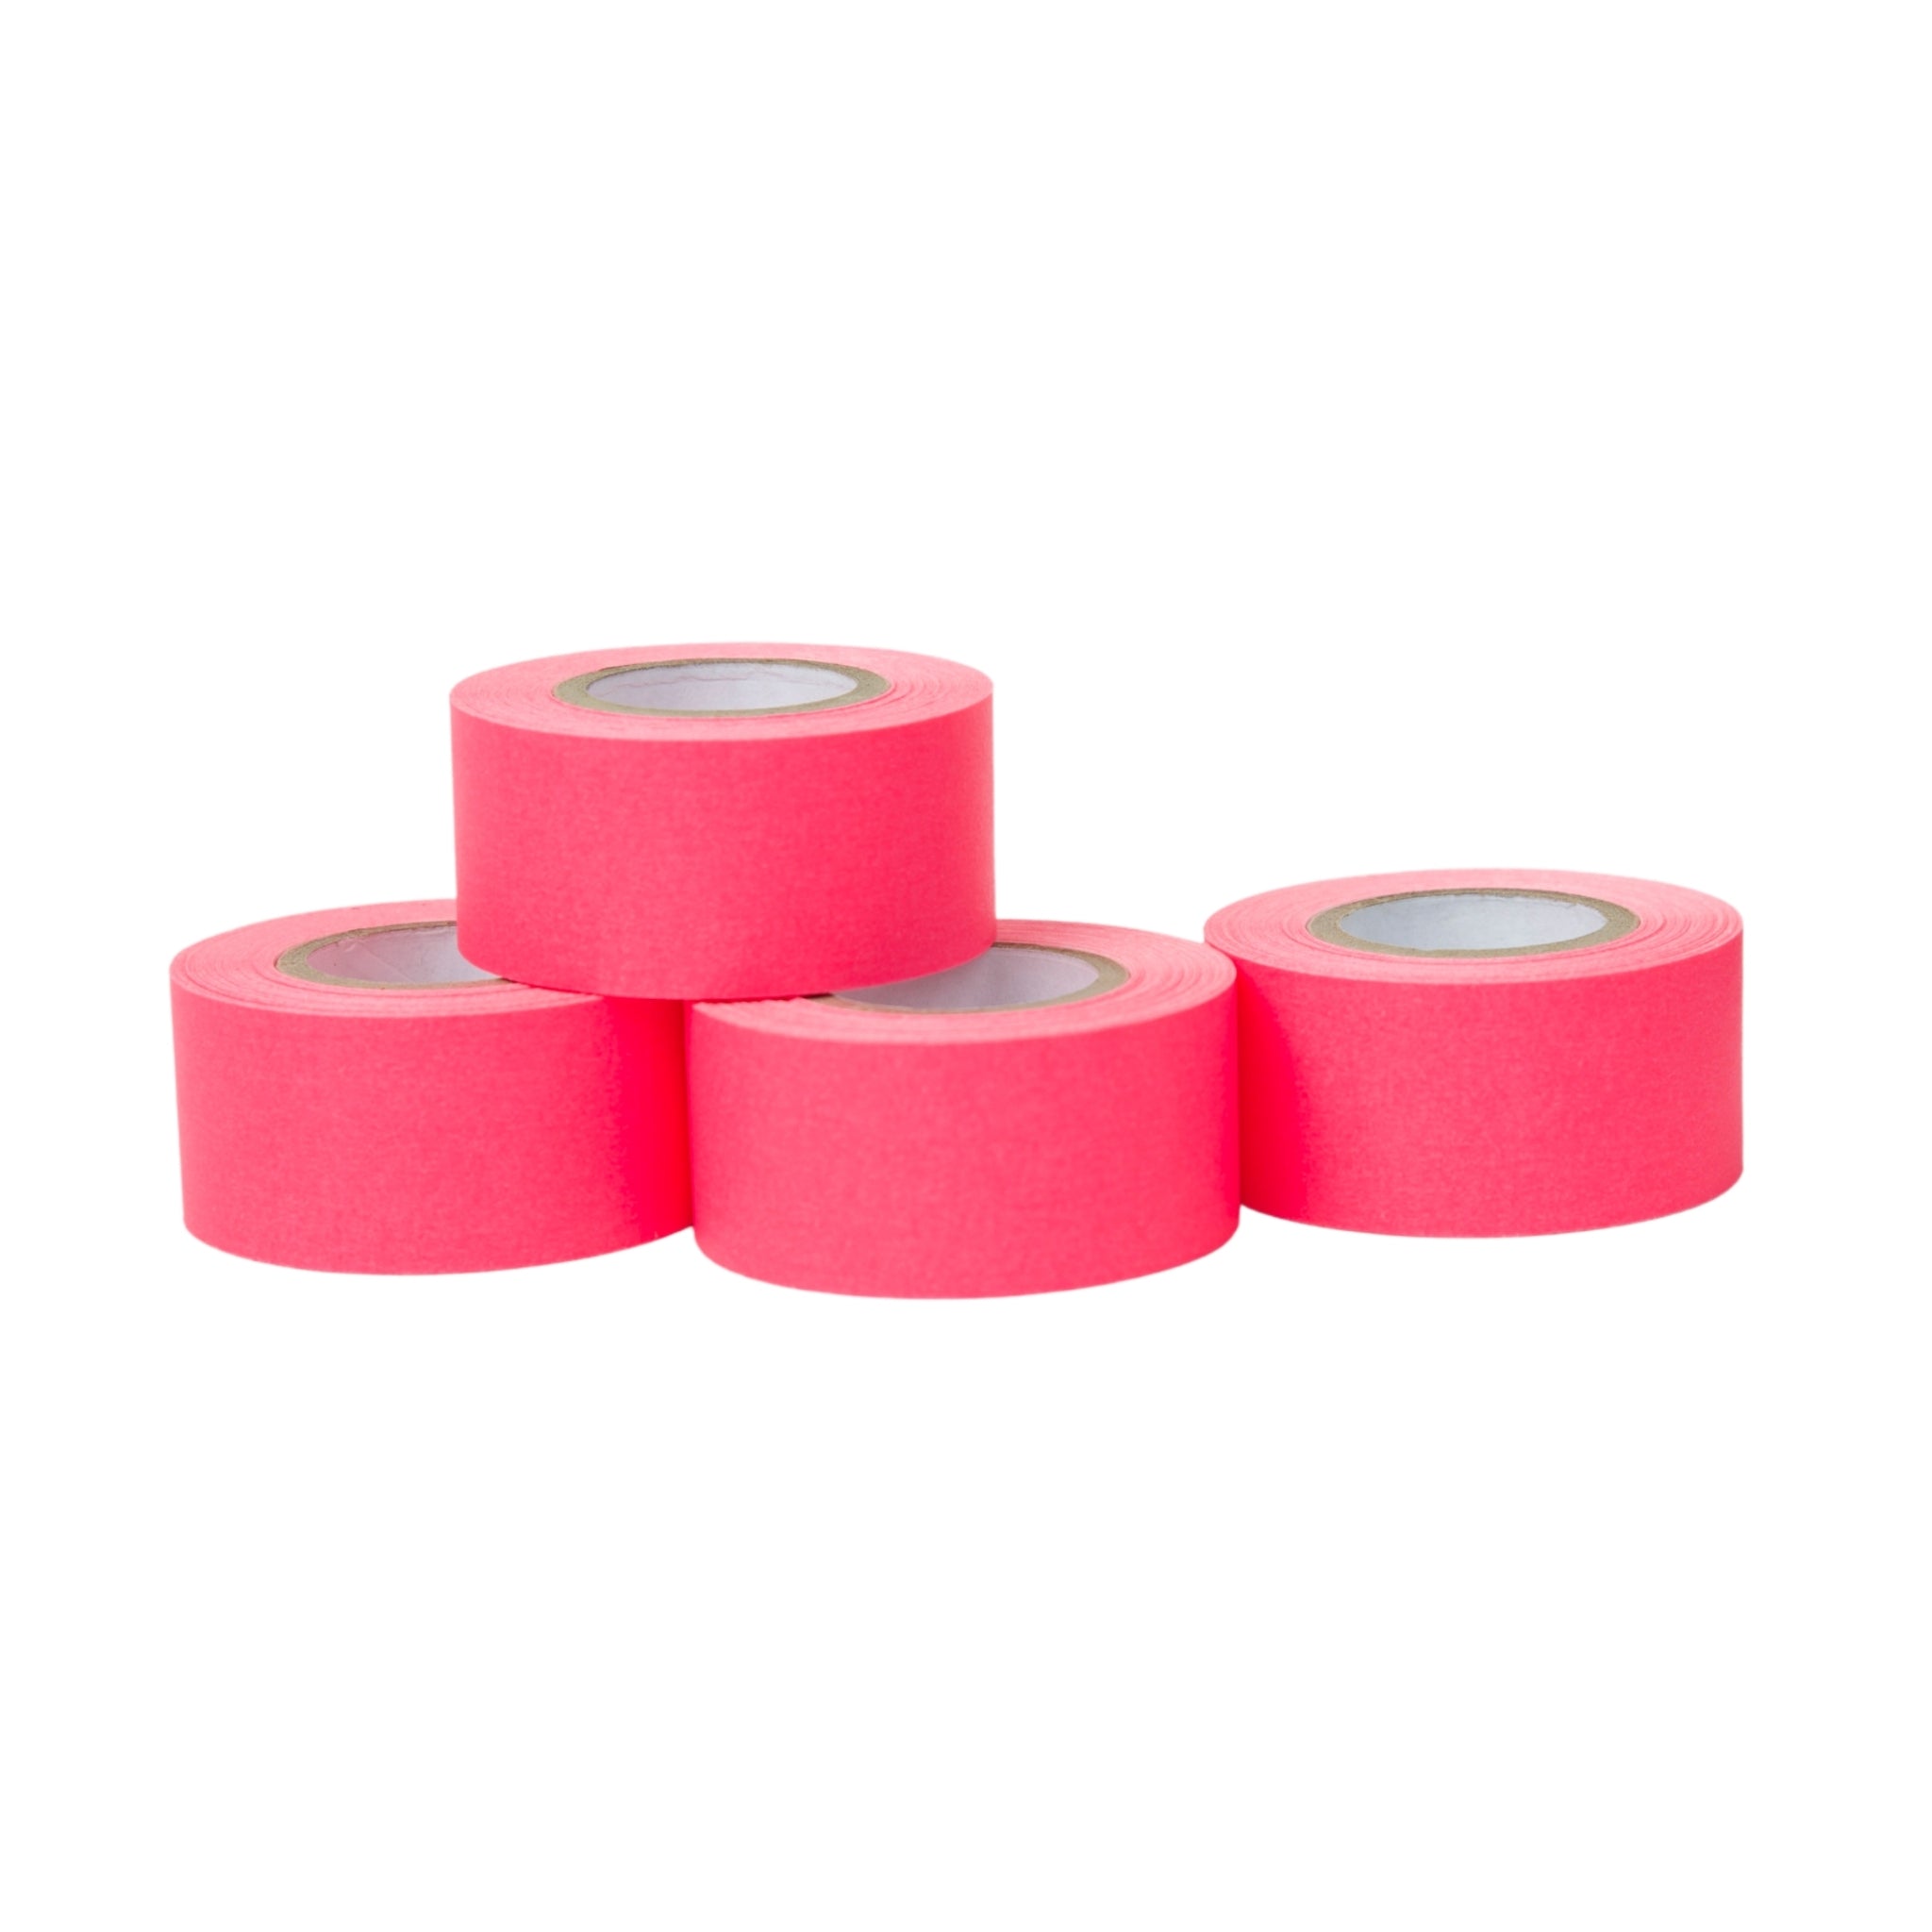 1" x 360" Artist Tape - 4 Pack Fluorescent Pink